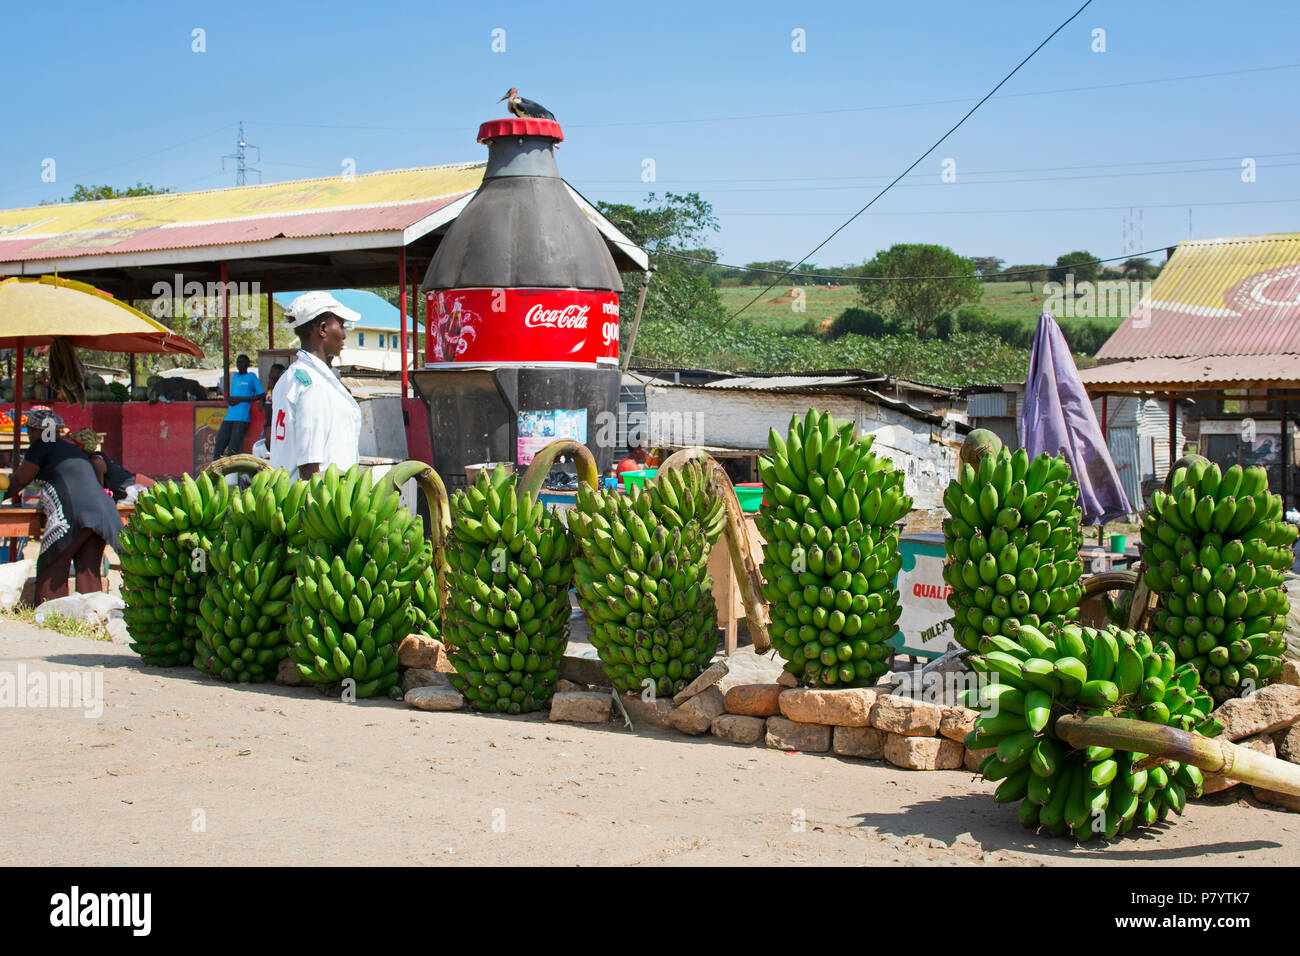 Matooke, bananos, plátanos verdes comida nacional de Uganda, el Mercado de carretera Foto de stock